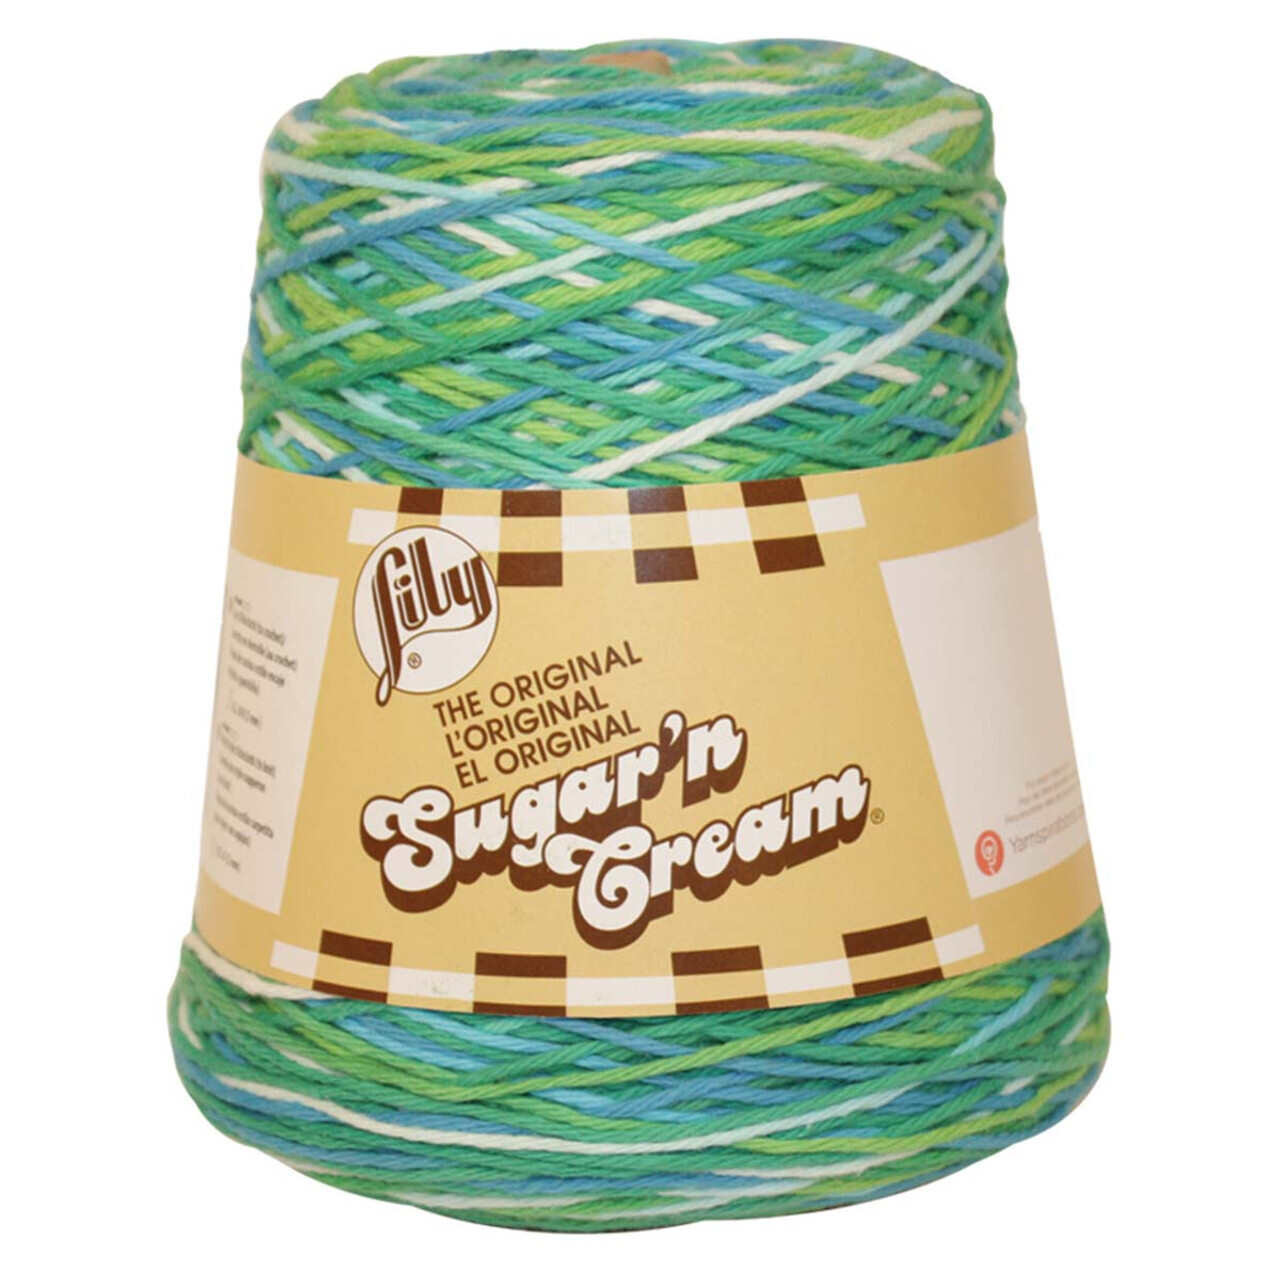 Lily Sugar 'n Cream Cones Yarn